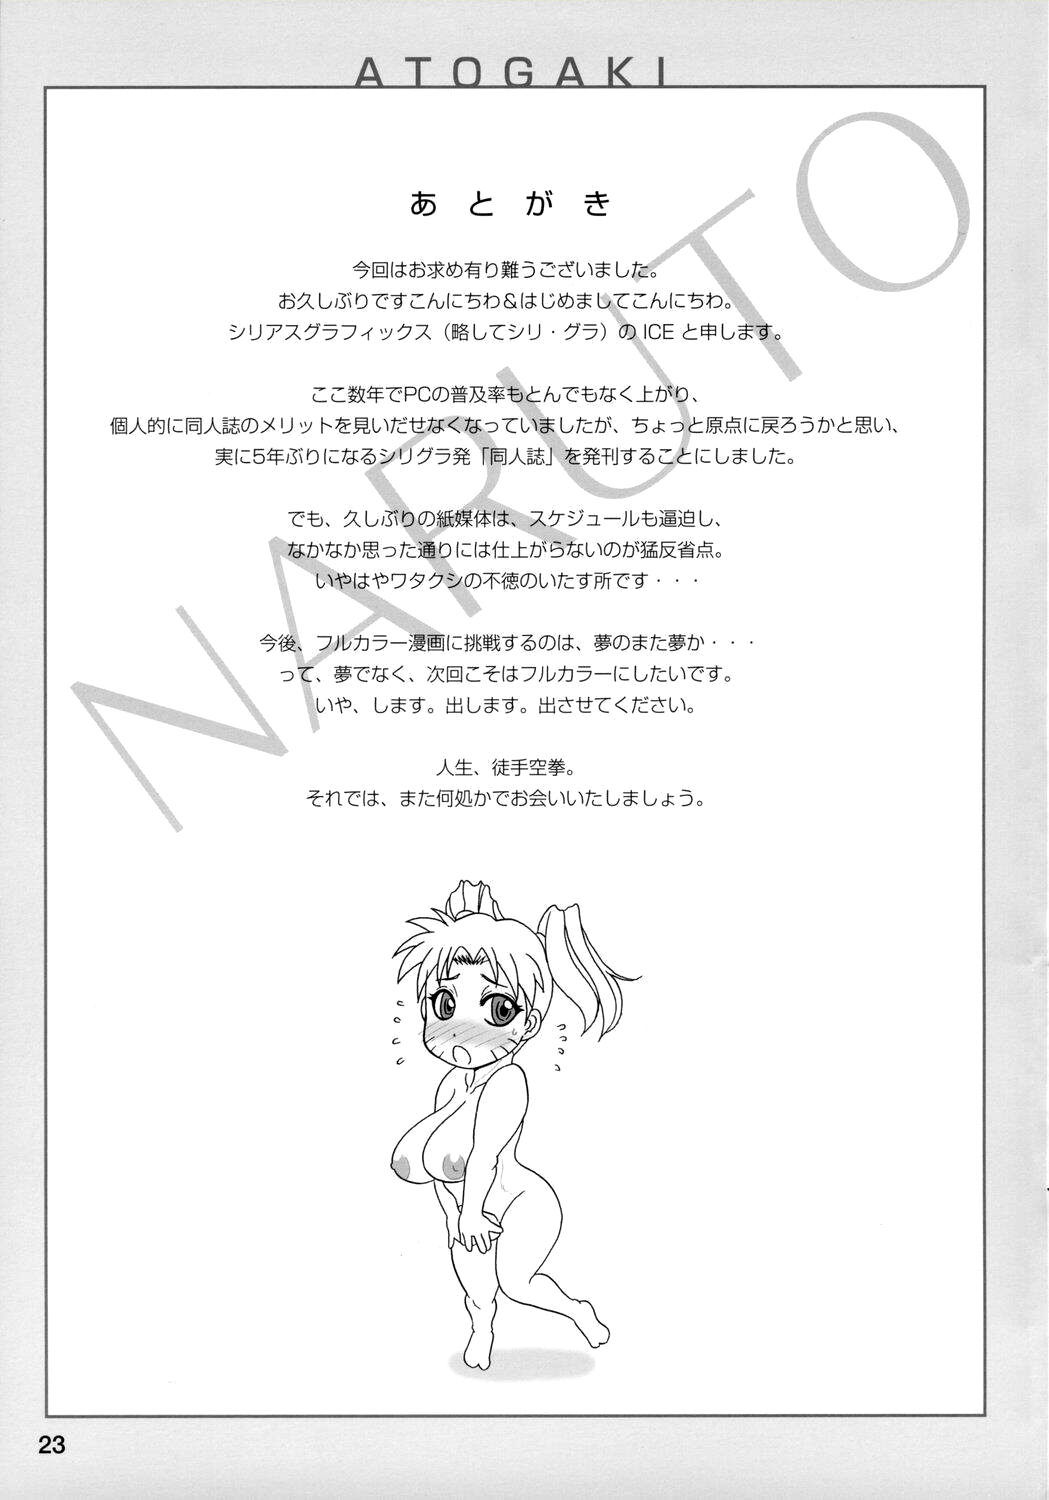 Kunoichi Style Max Speed naruto 23 hentai manga